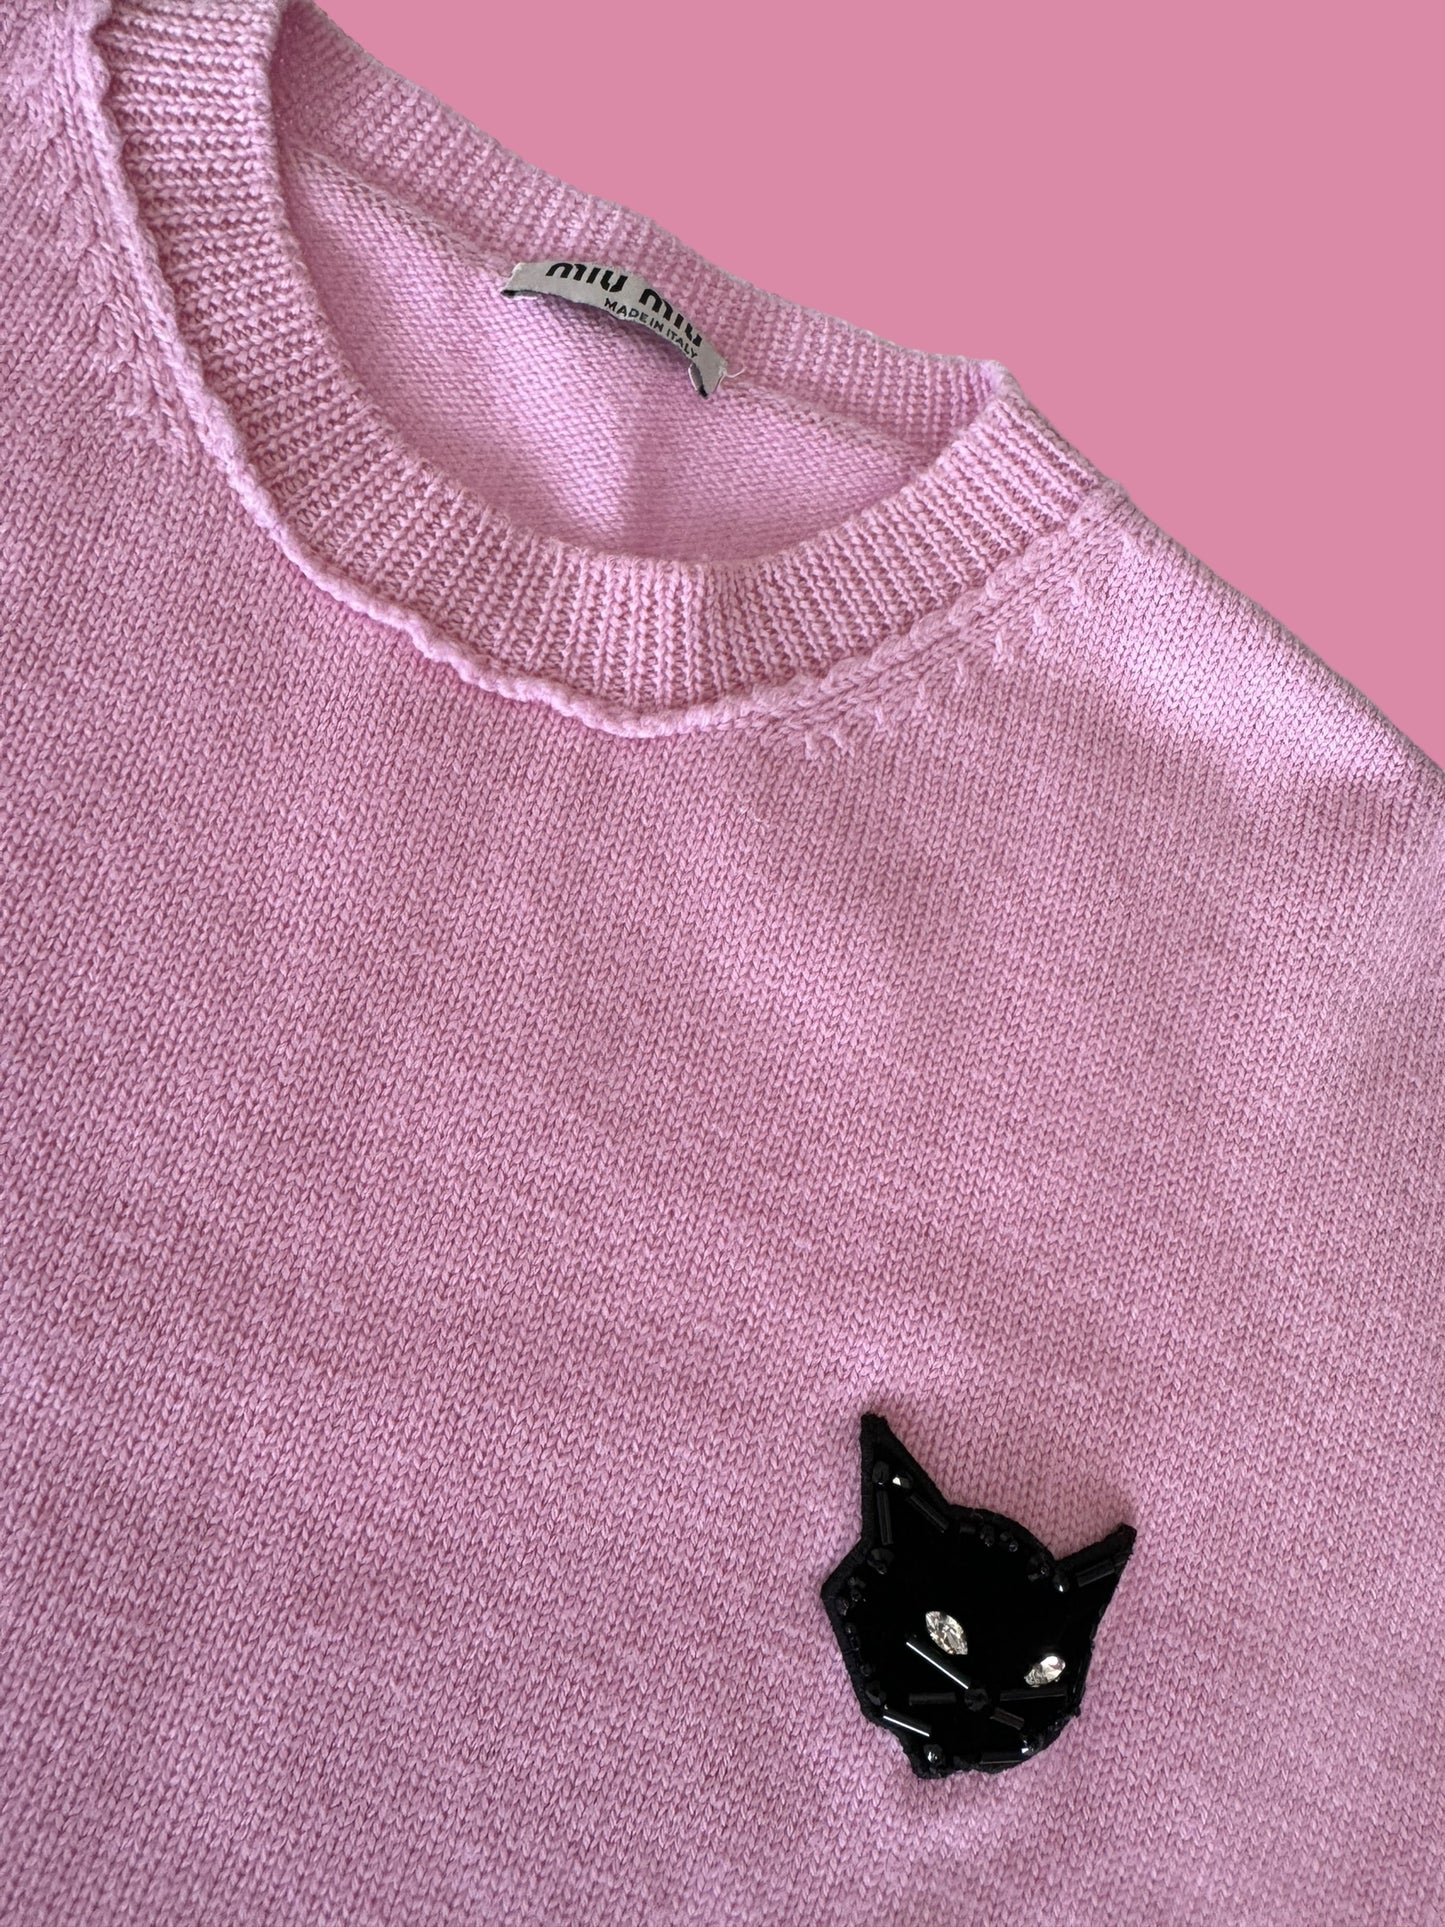 MIU MIU cropped 🐱 sweater